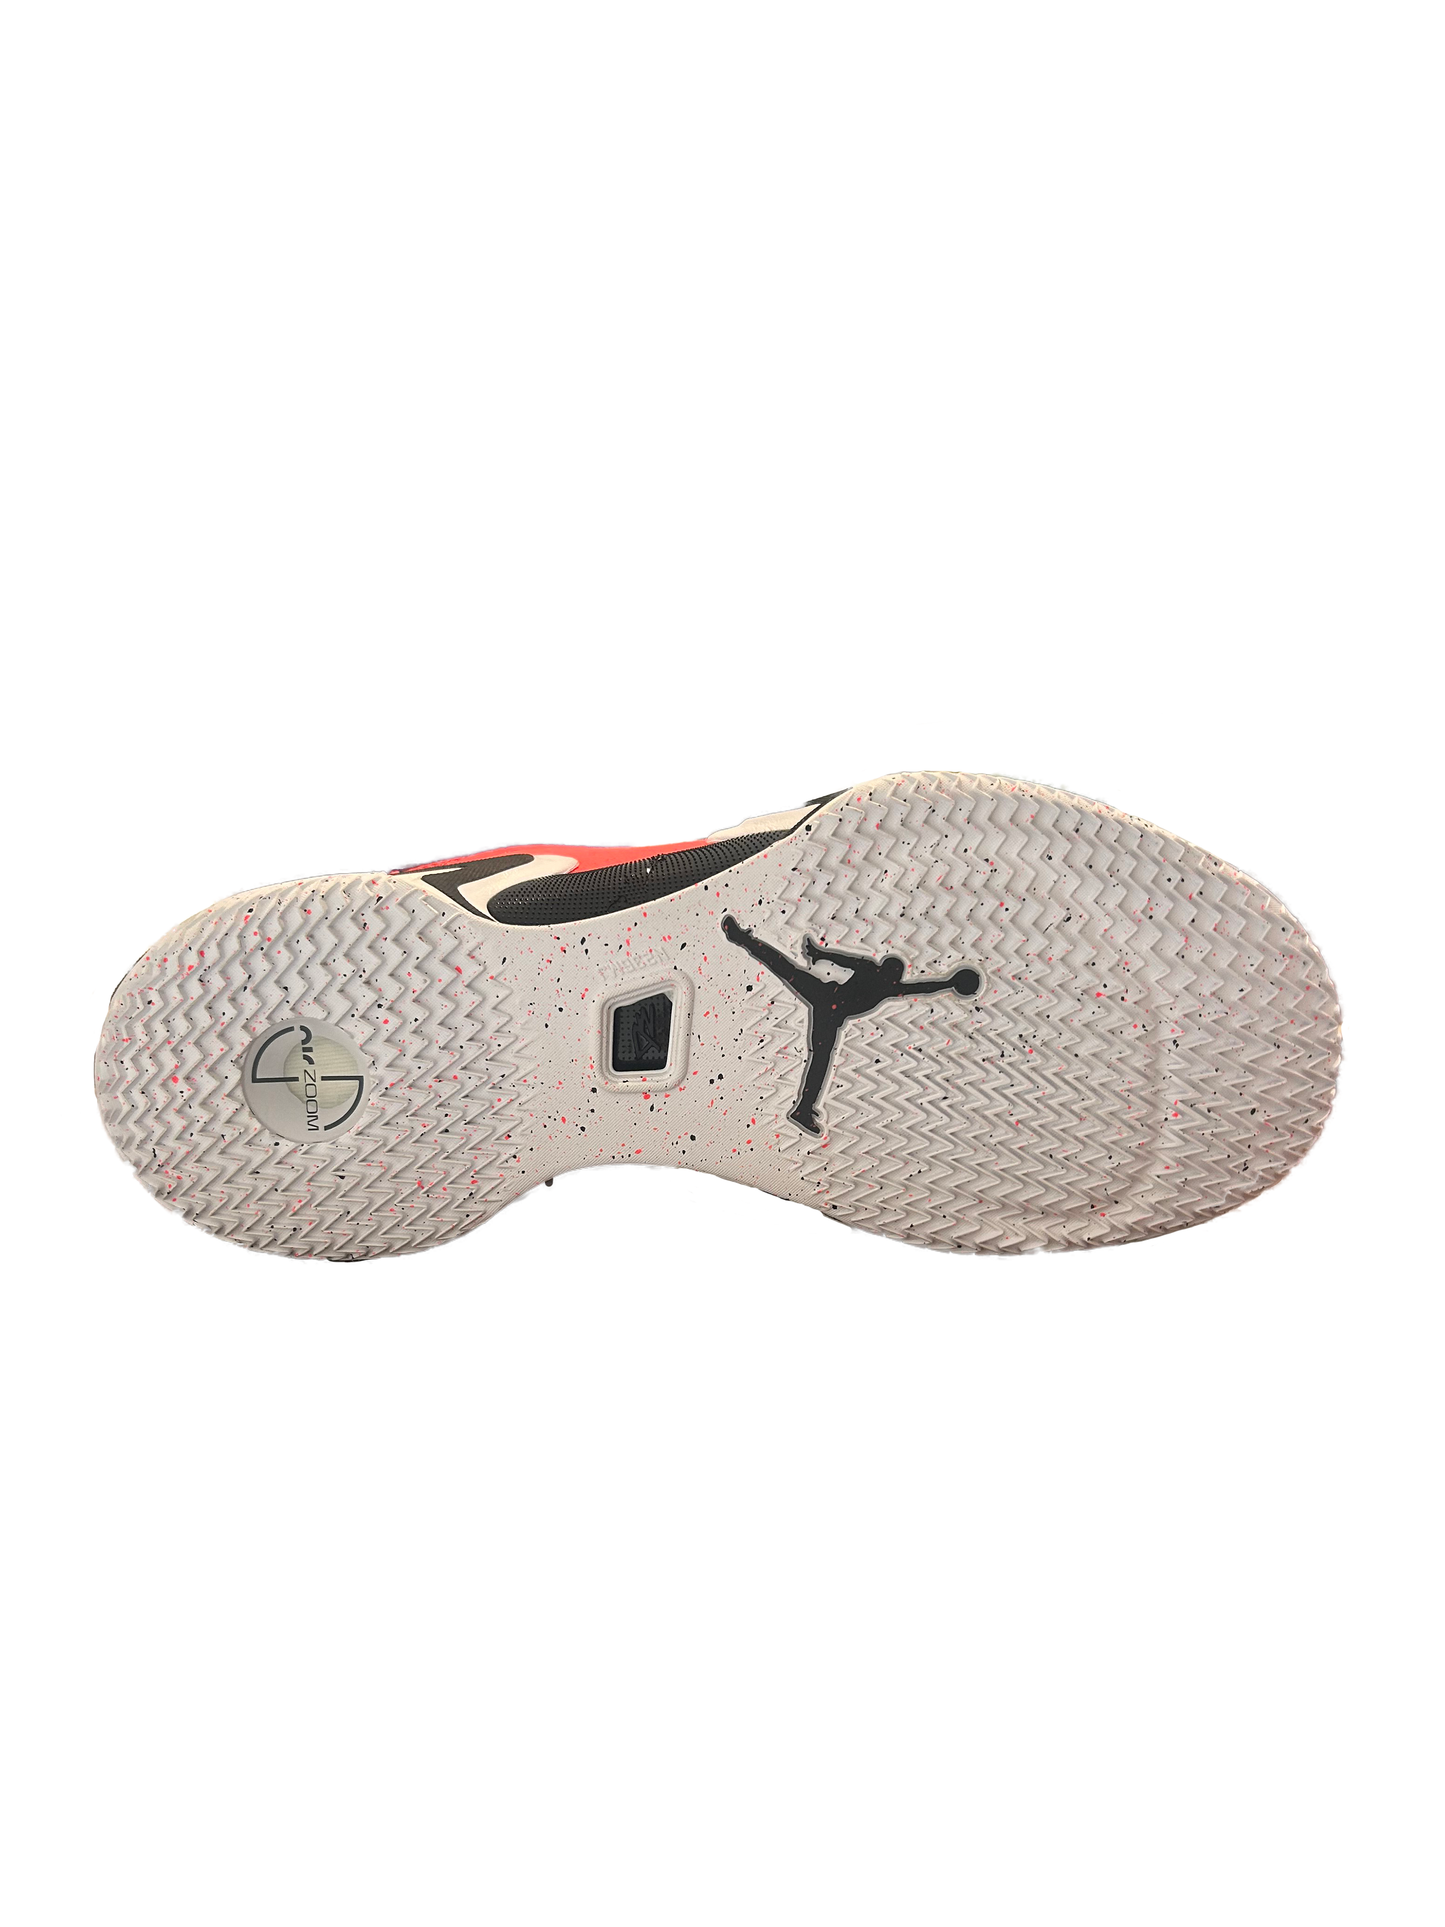 Nike Air Jordan 36 Low PF 'Infrared' DH0832-660